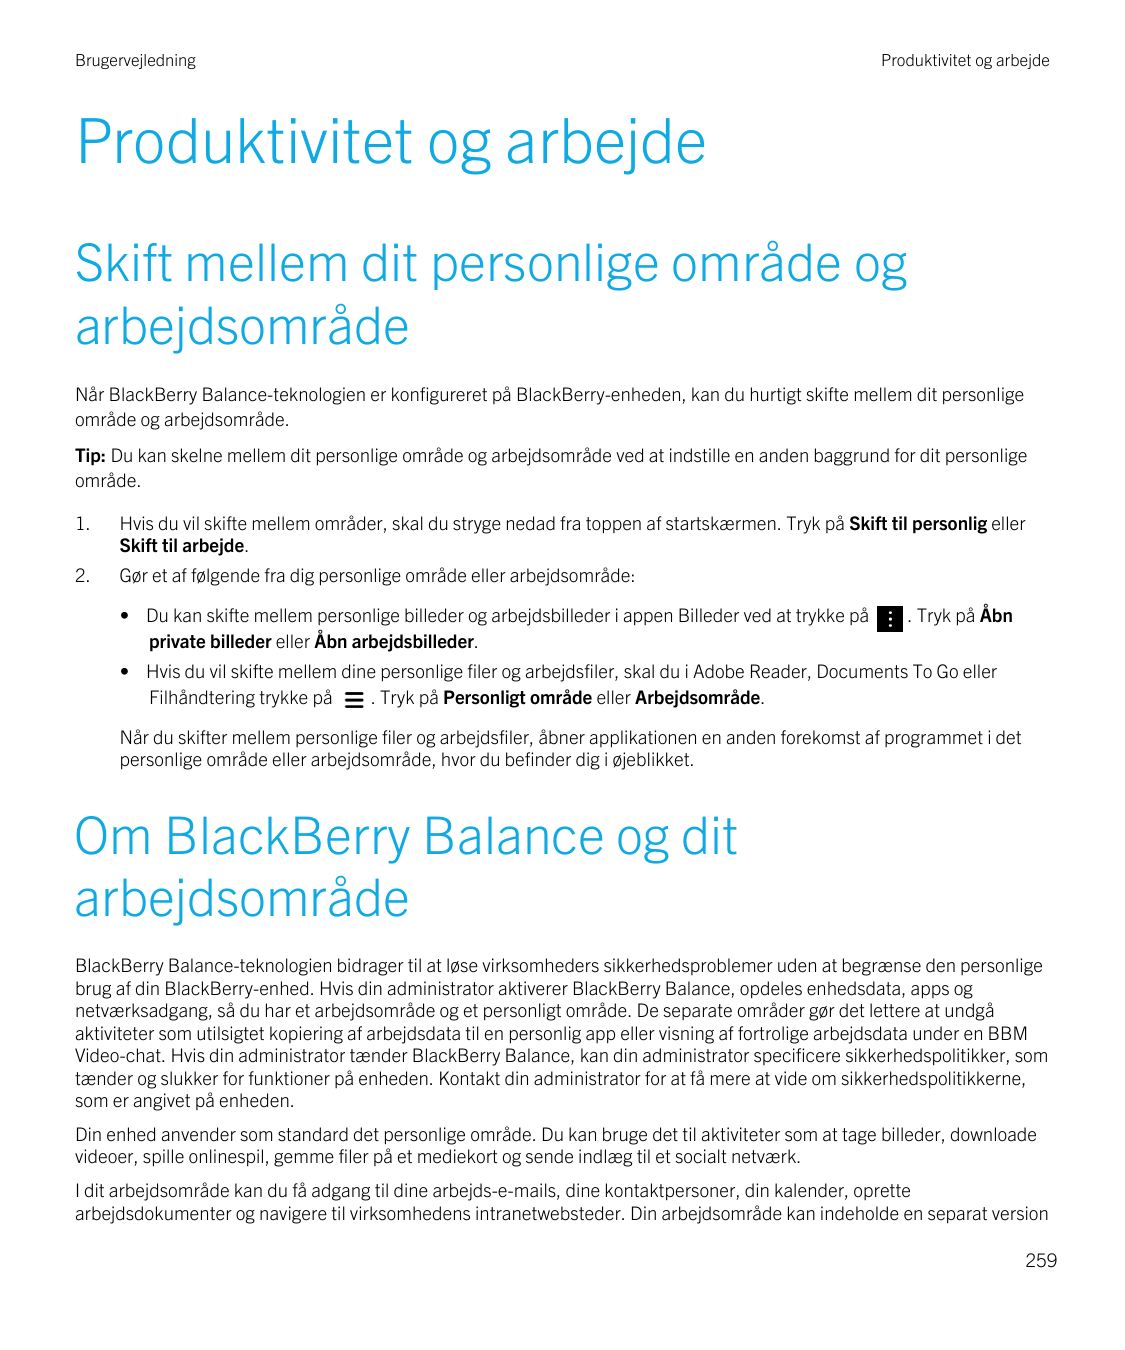 BrugervejledningProduktivitet og arbejdeProduktivitet og arbejdeSkift mellem dit personlige område ogarbejdsområdeNår BlackBerry